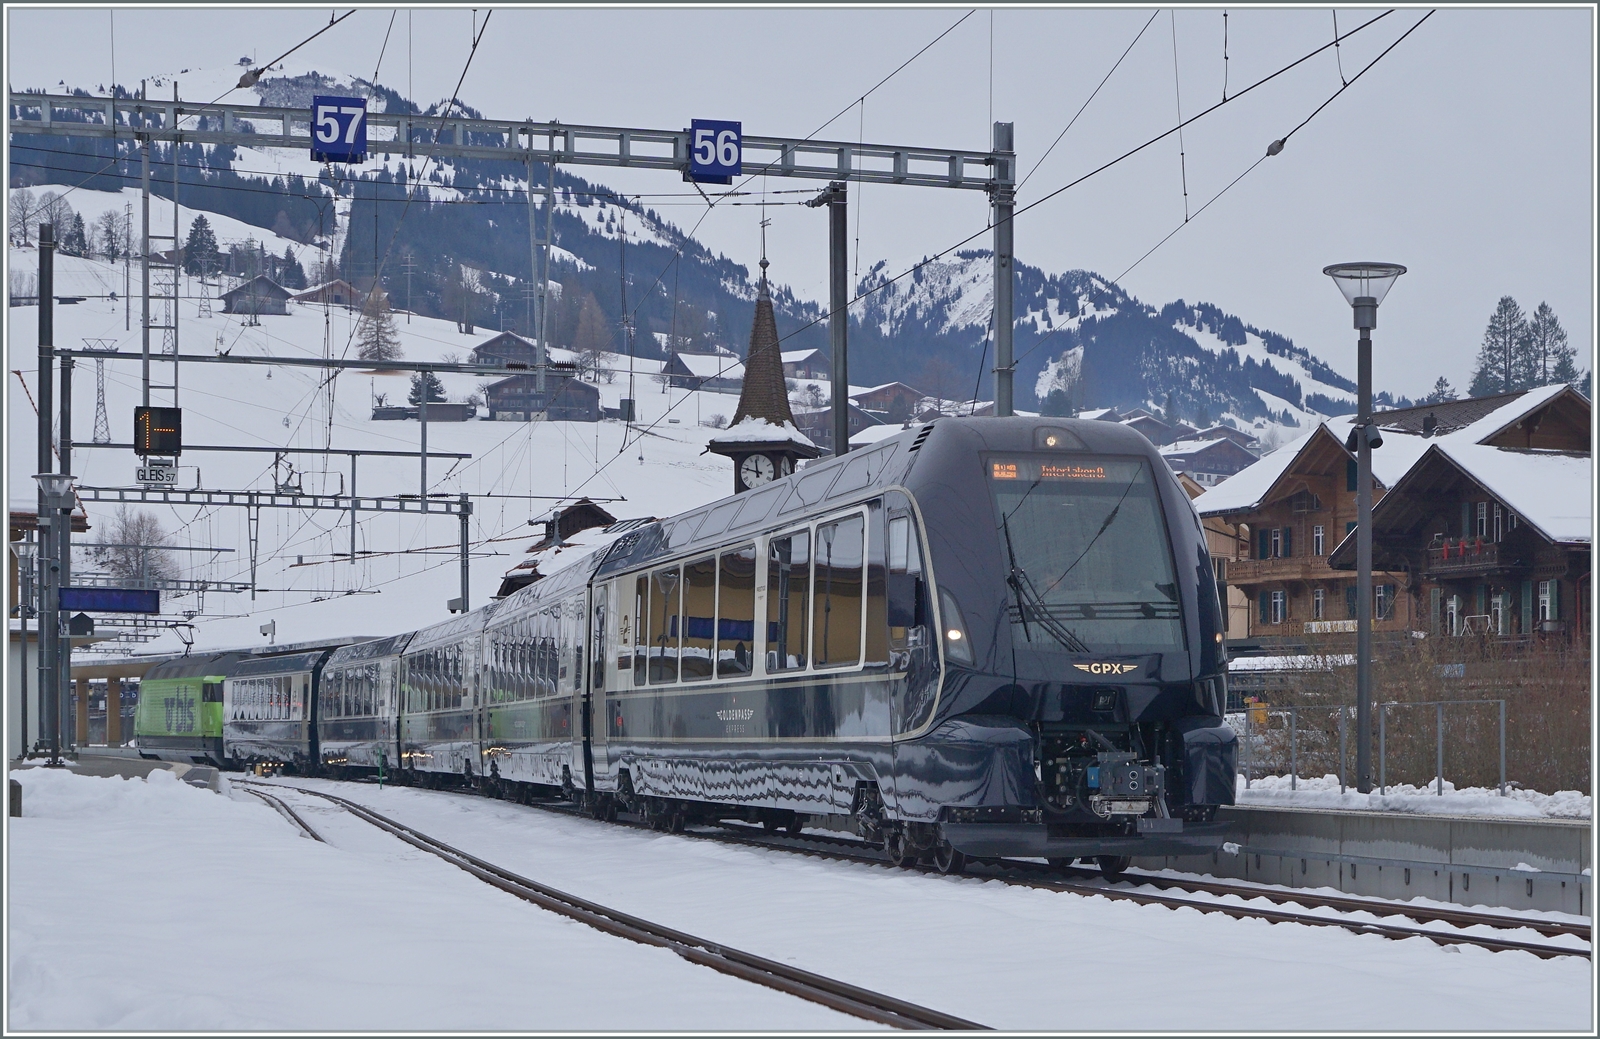 Spurwechsel in Zweisimmen: Der GPX 4065 von Montreux nach Interlaken Ost steht in Zweisimmen zur Abfahrt bereit.

15. Dezember 2022